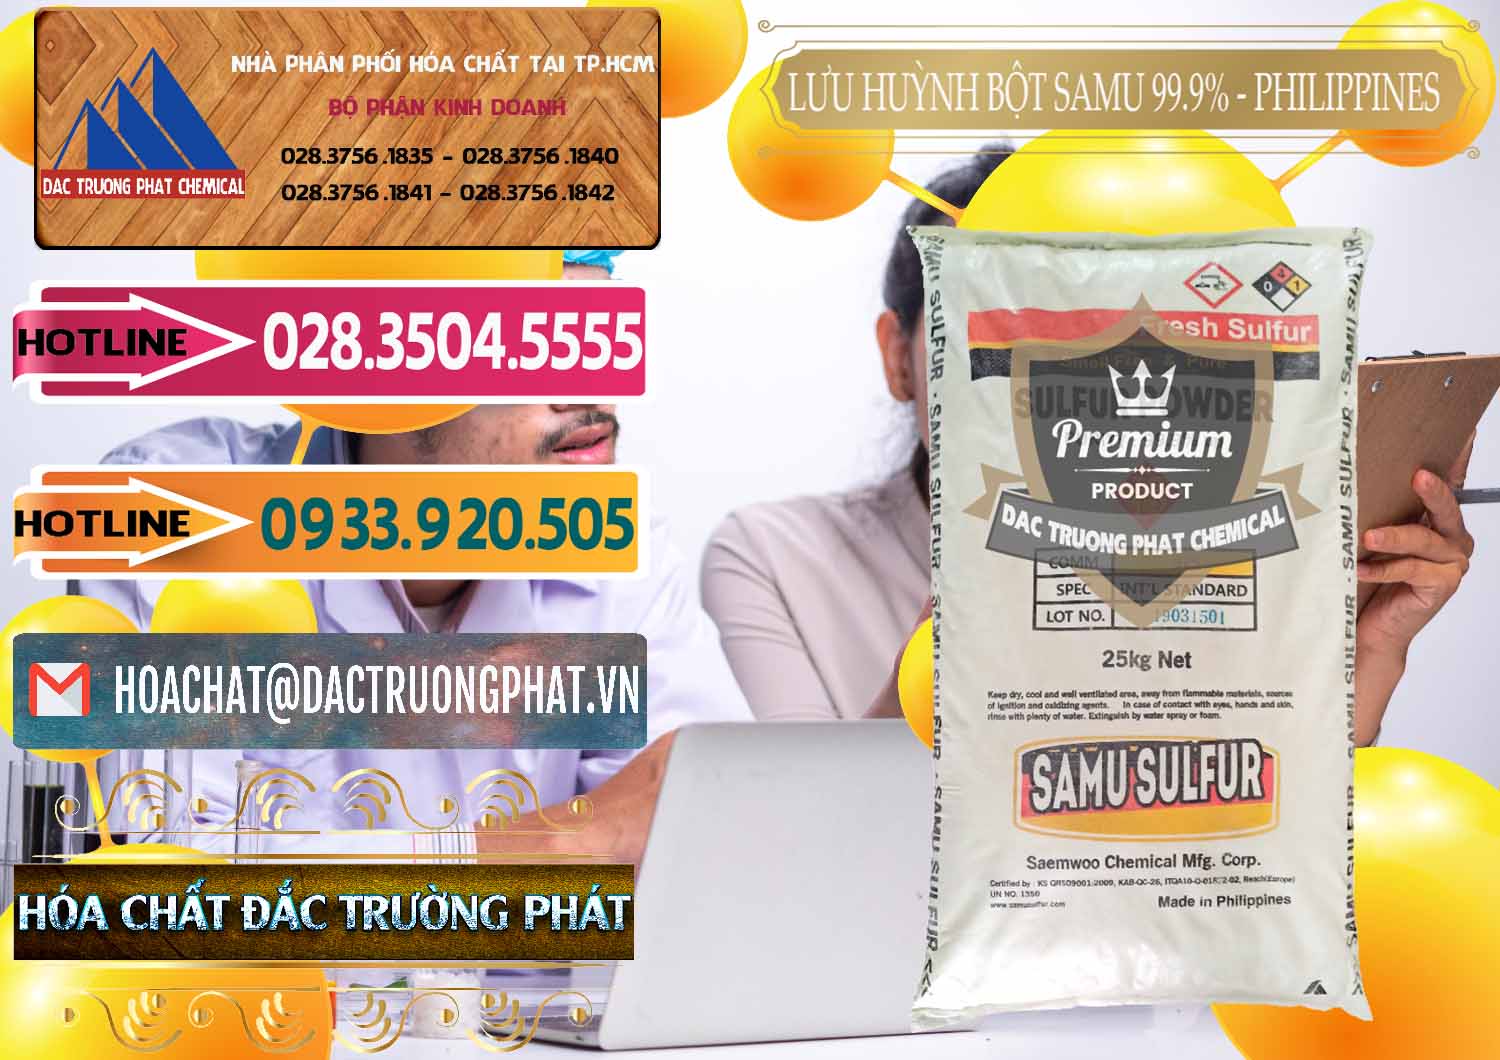 Cty bán - cung cấp Lưu huỳnh Bột - Sulfur Powder Samu Philippines - 0201 - Nơi chuyên cung ứng & phân phối hóa chất tại TP.HCM - dactruongphat.vn